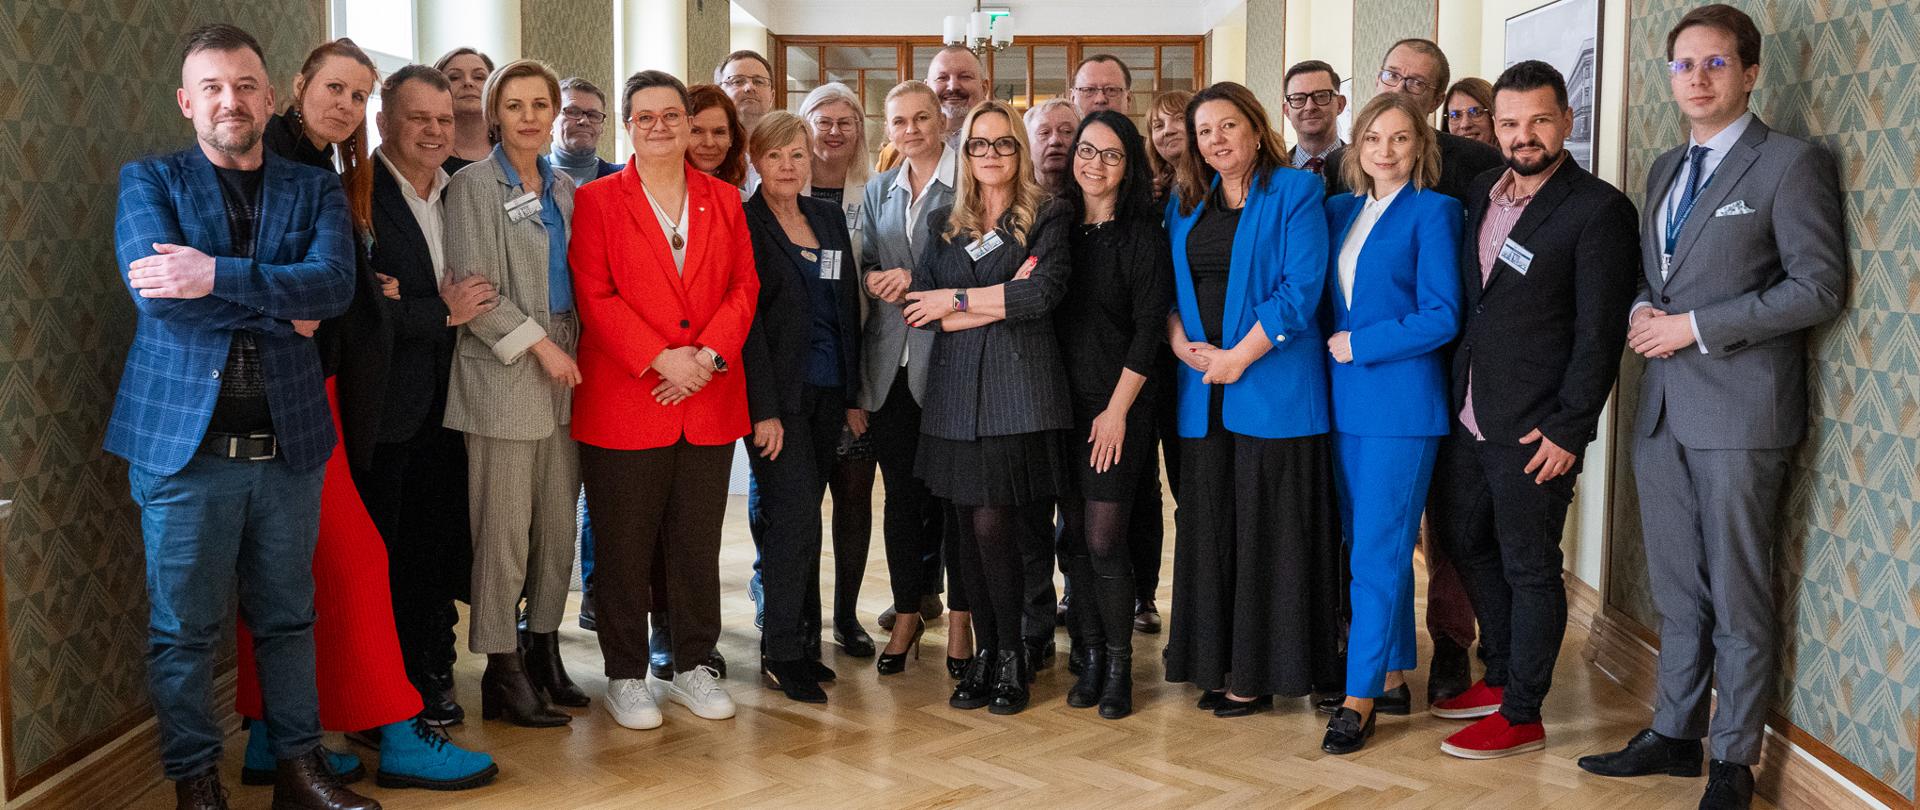 Spotkanie ministrów z Nauczycielami Roku. Zdjęcie grupowe przedstawia wszystkich nauczycieli roku i wiceministrów. Wszyscy stoją na korytarzu w MEN